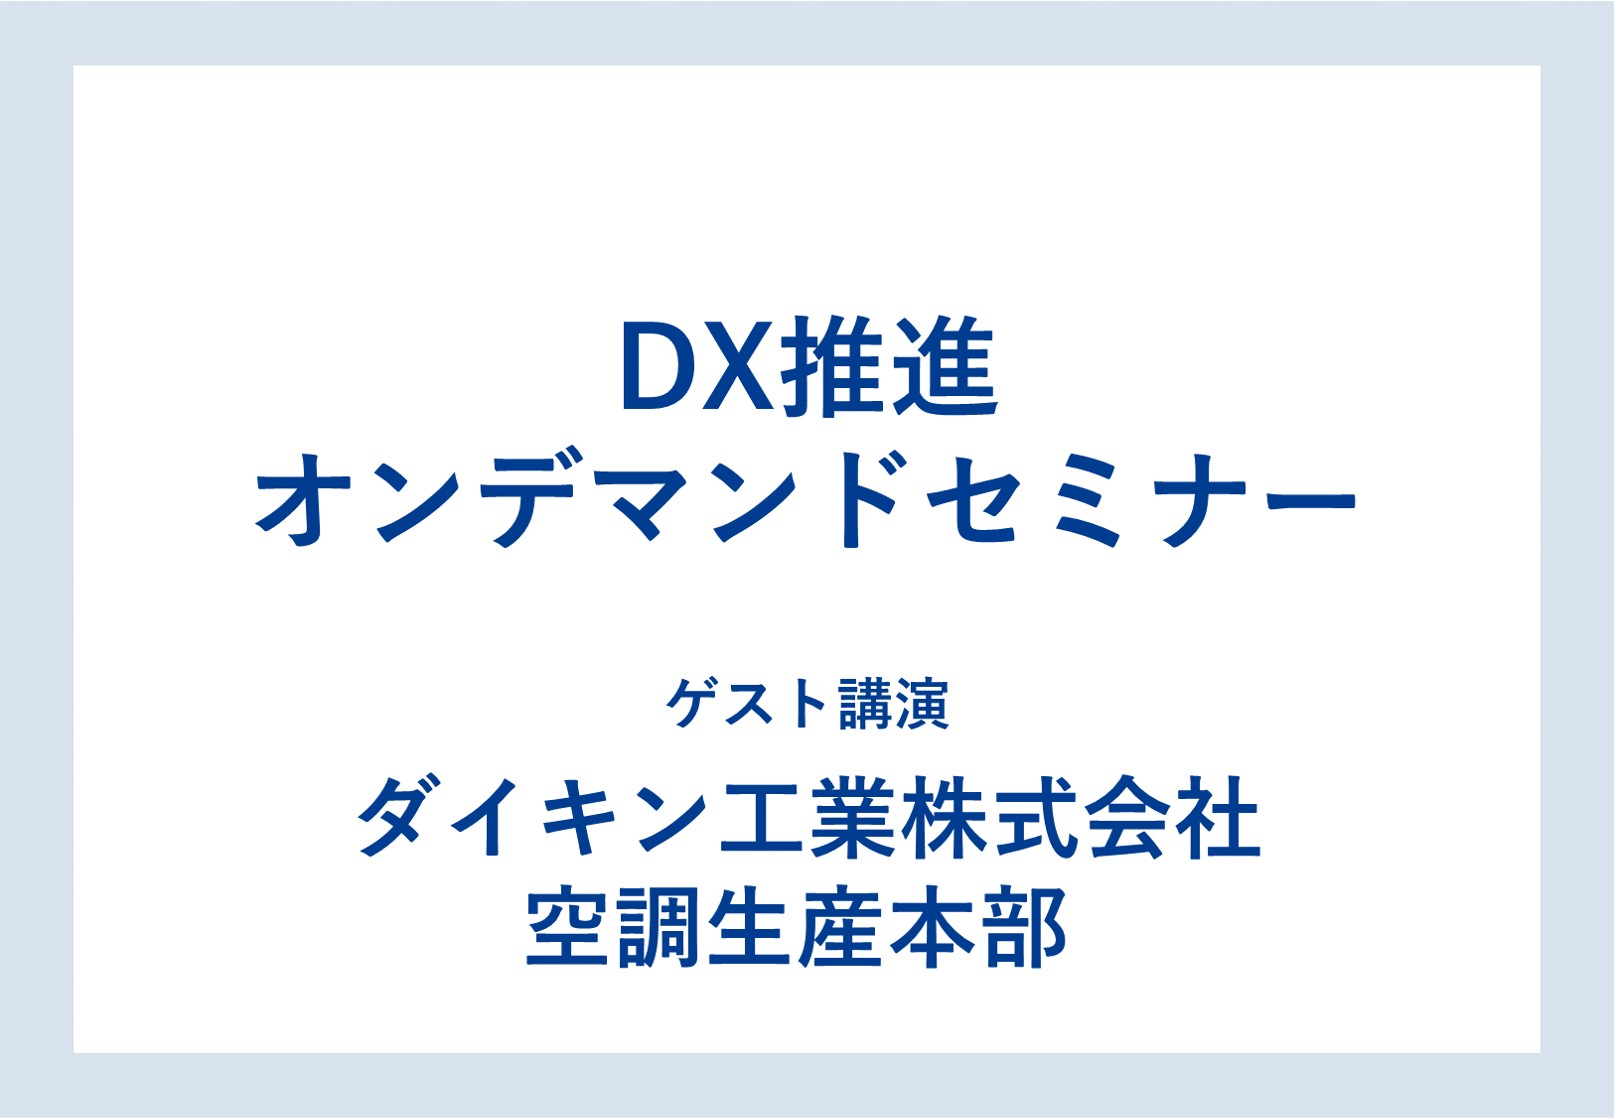 ダイキン DX推進オンデマンドセミナー Vol.4 「製品開発力強化のためのDX戦略」